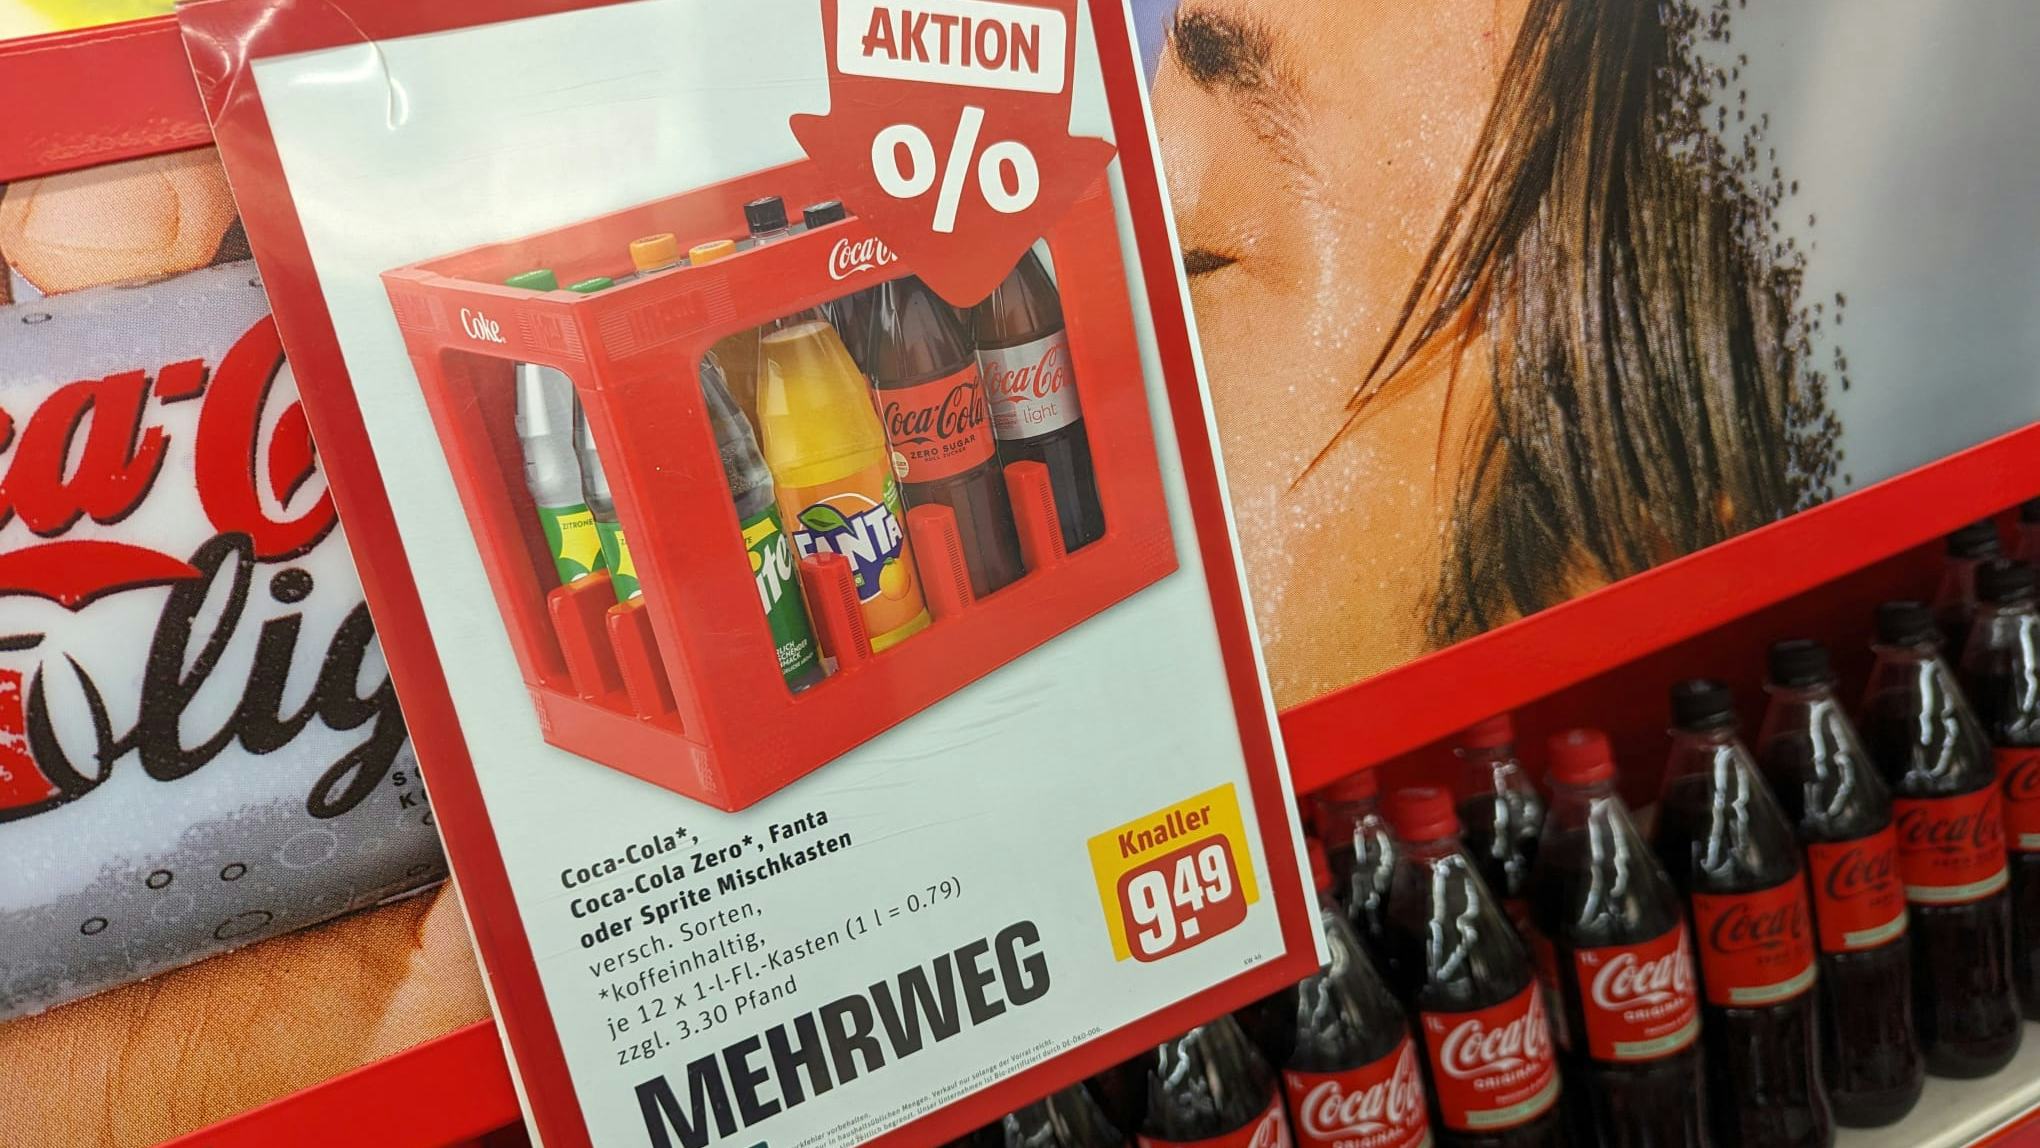 A-merken zoals Coca-cola zijn in Duitsland vaak veel goedkoper blijkt nu ook uit onderzoek van het ministerie van Economische Zaken en Klimaat. Foto: Distrifood